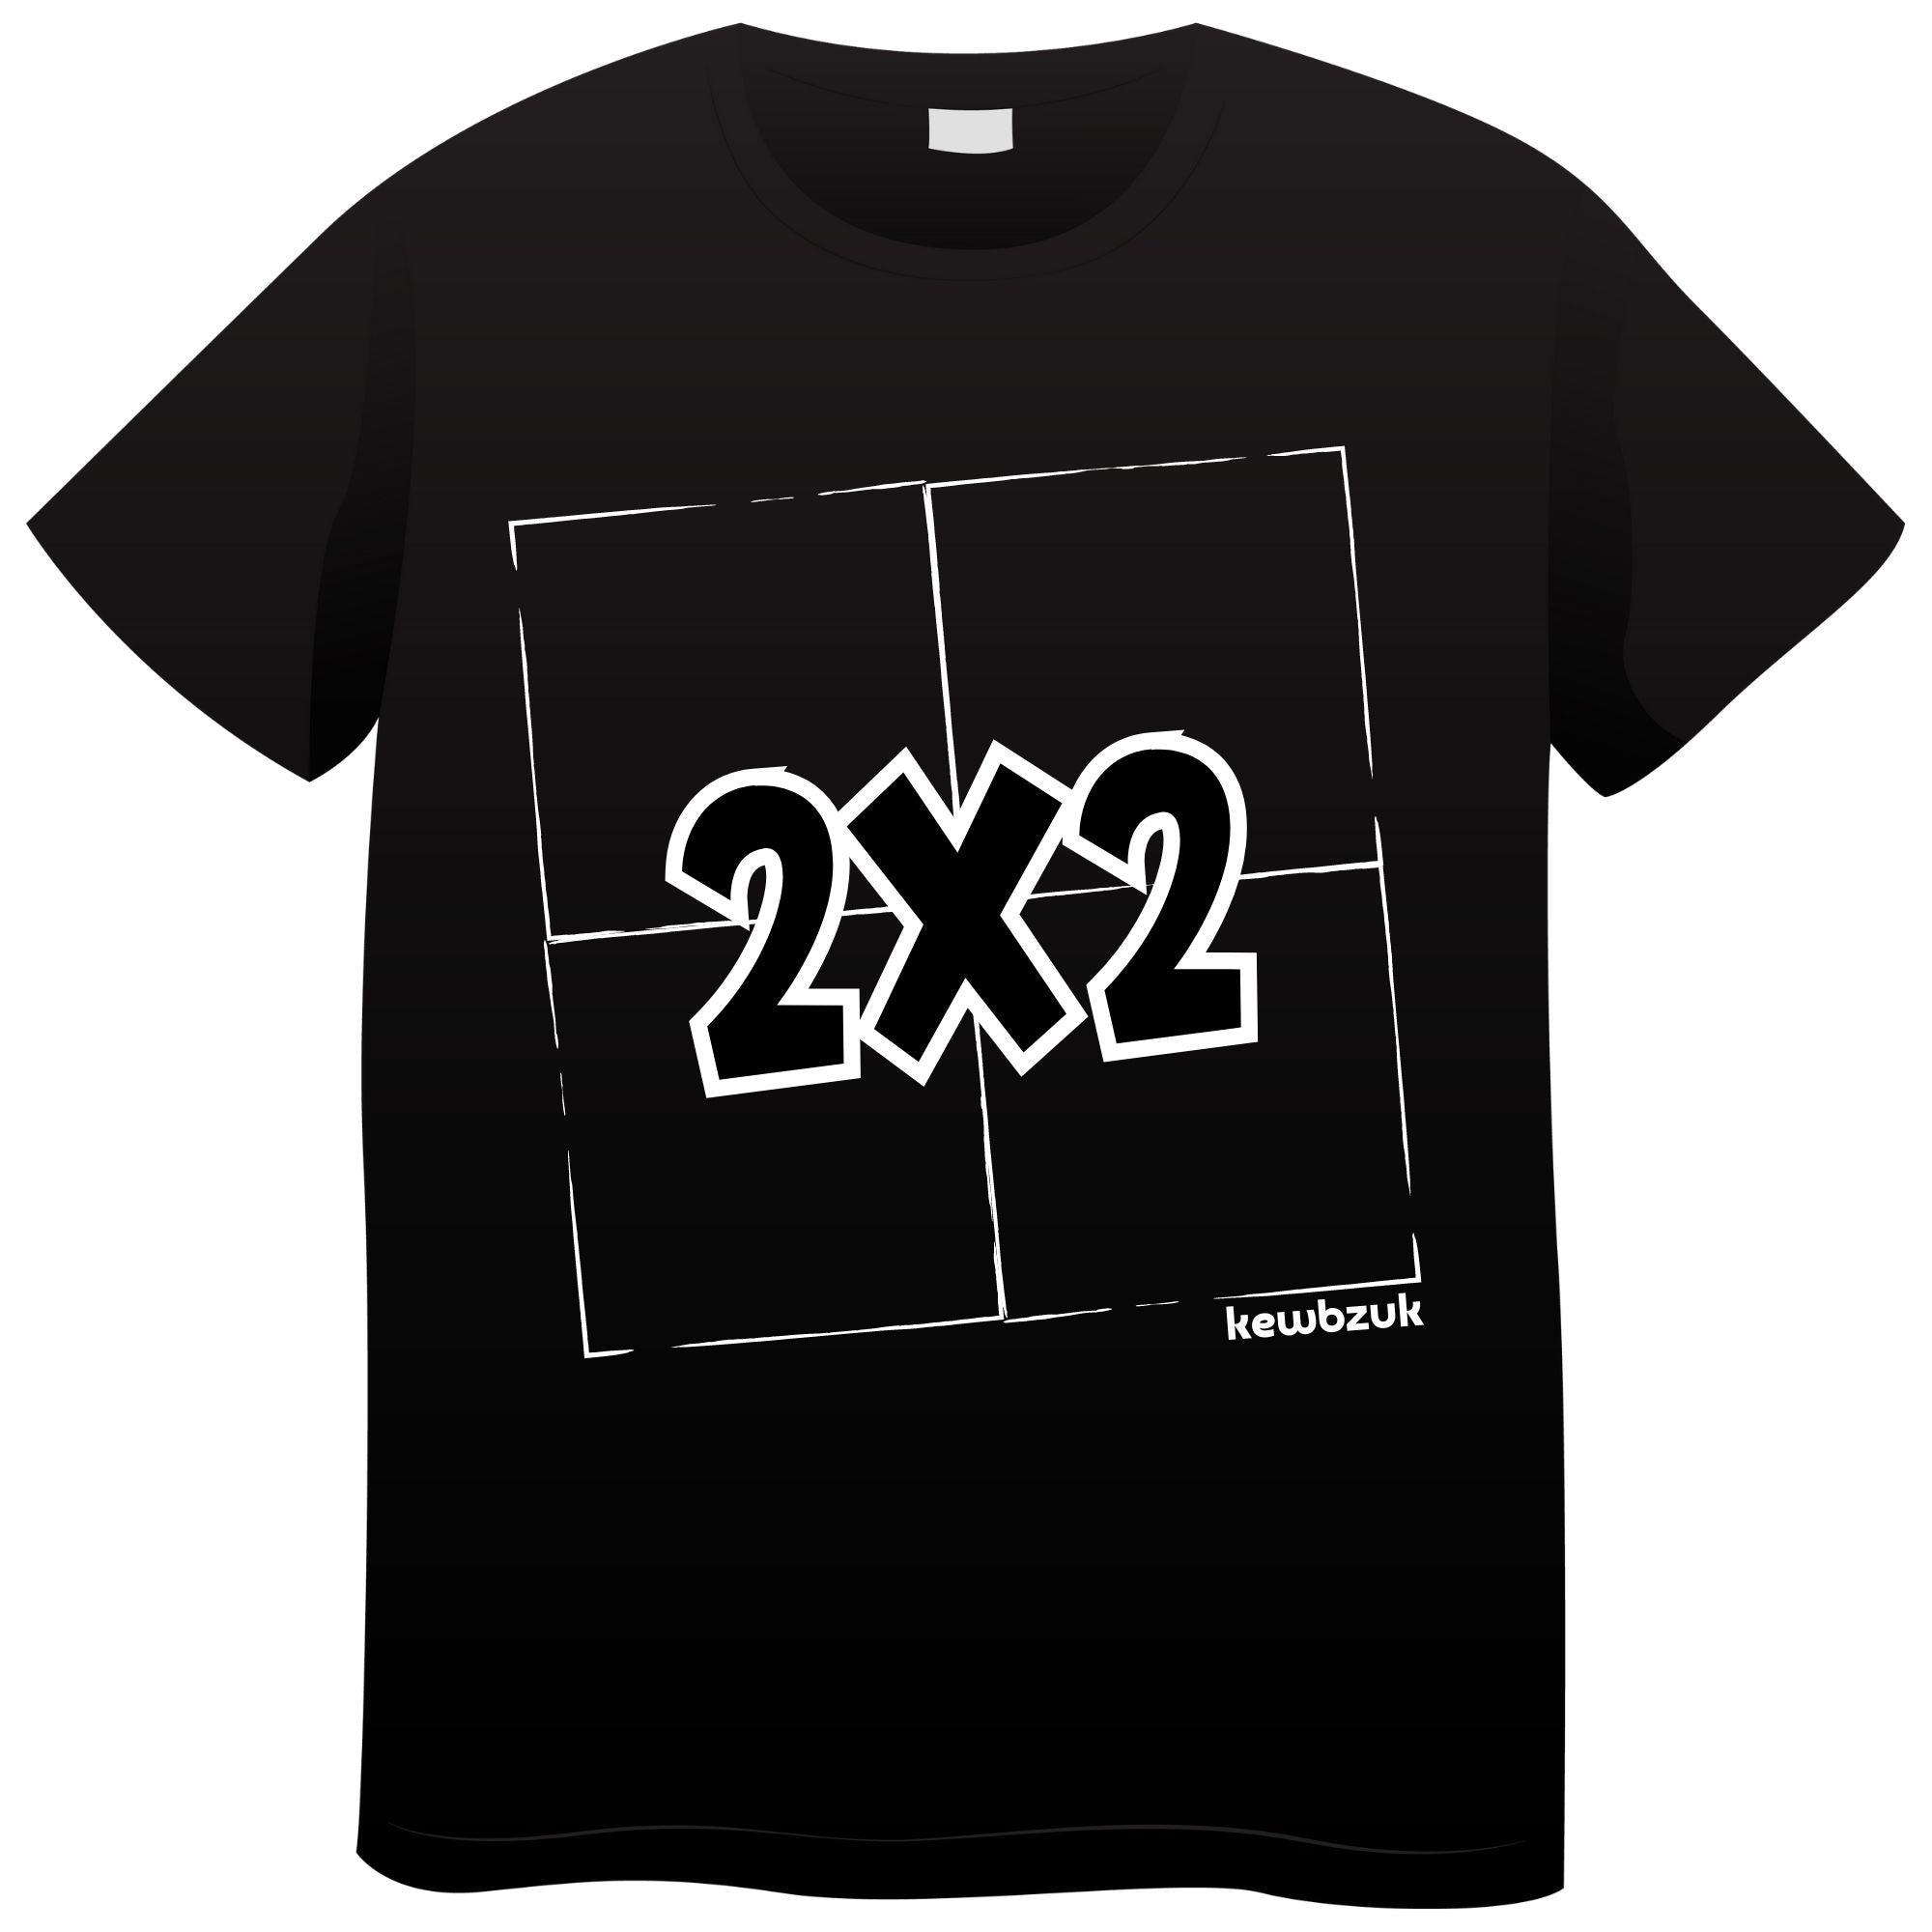 2x2 Kids T-Shirt (7-13 years)